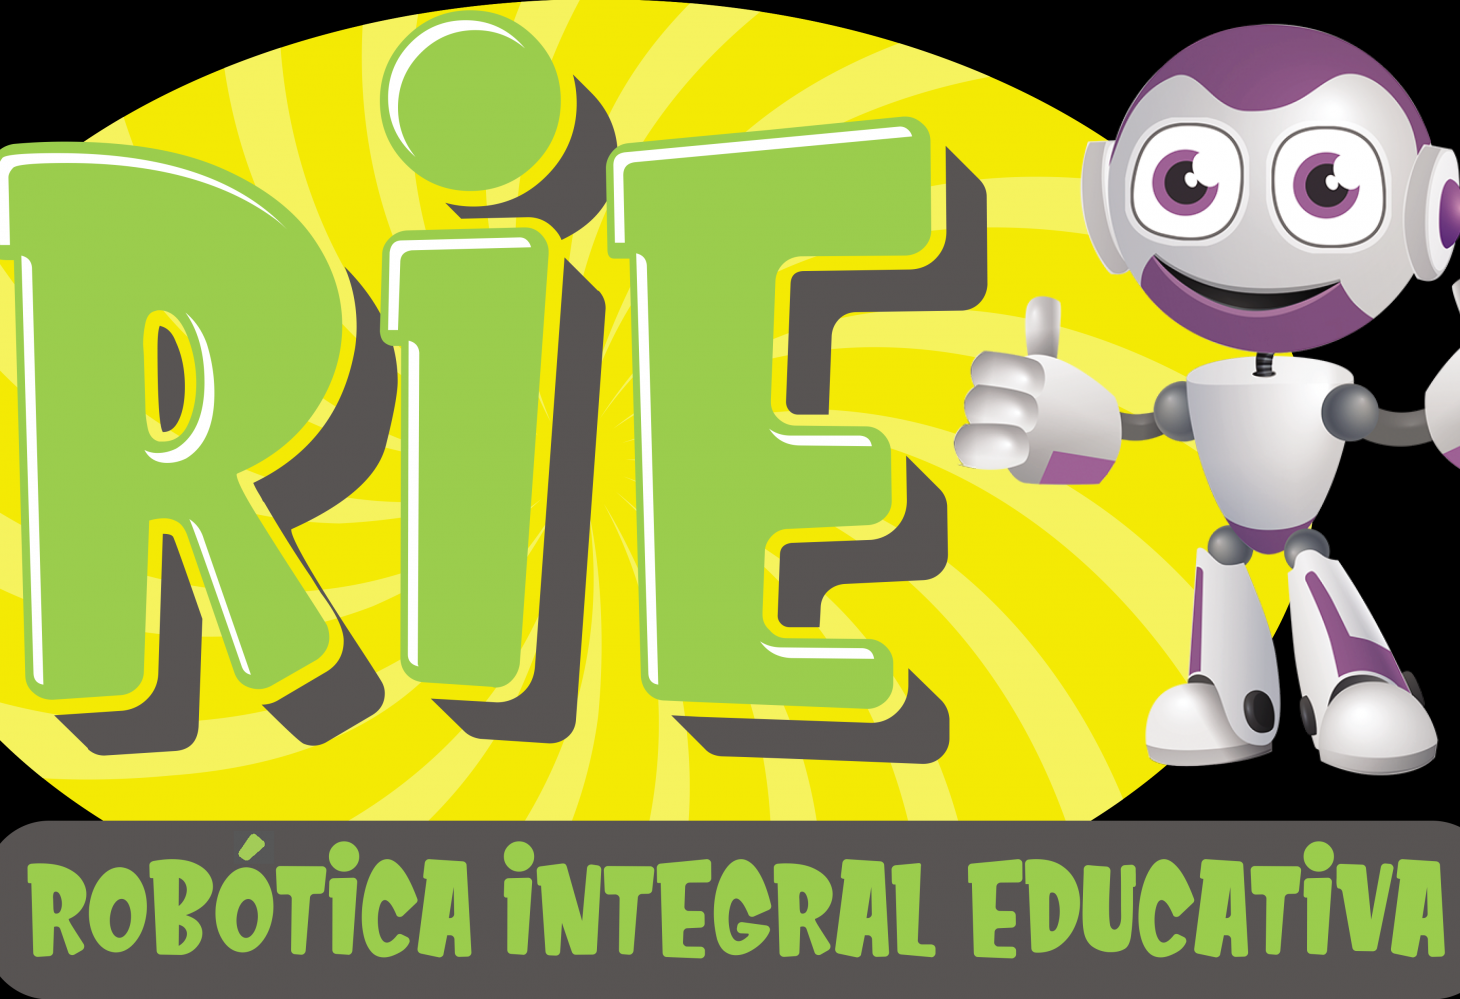 Proyecto RIE - Nuevo método de enseñanza de robótica para Primaria y Secundaria